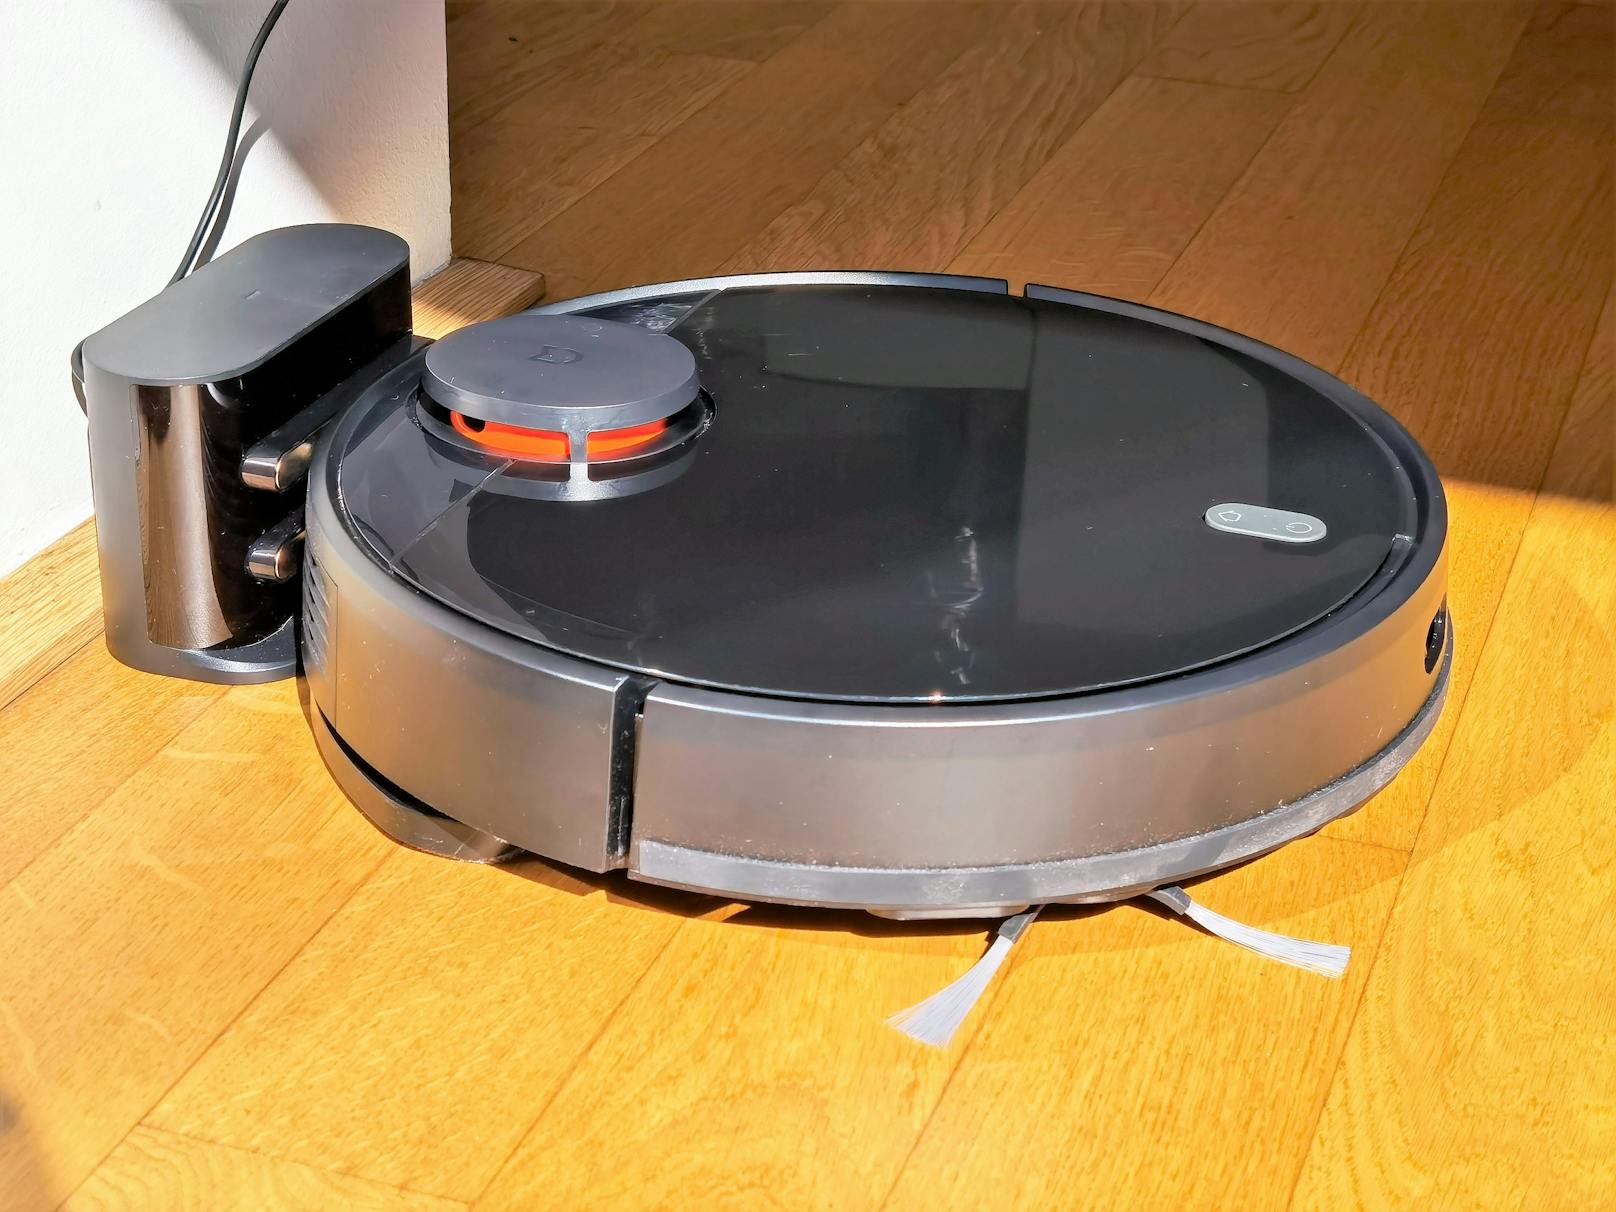 Beim Mi Robot Vacuum-Mop P ging ein ein paar Kompromisse ein, um den Preis mit rund 268 Euro niedrig zu halten, die Leistung wird davon aber kaum beeinträchtigt.